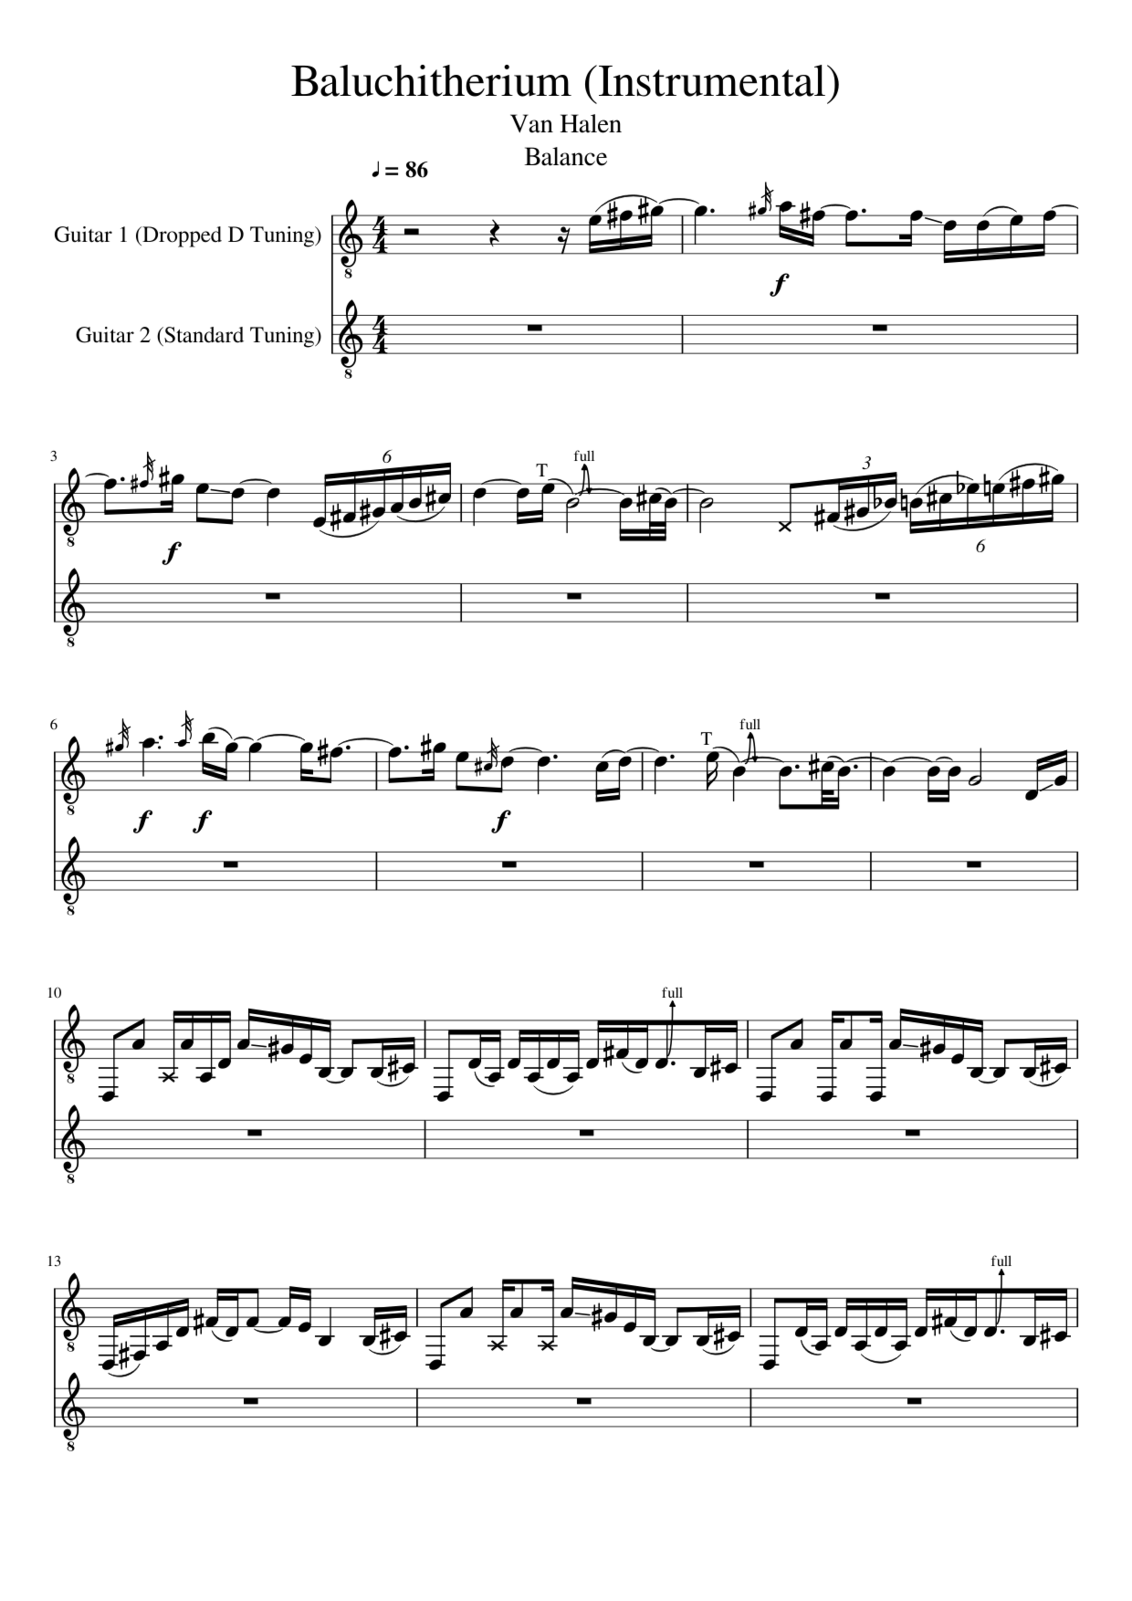 Baluchitherium slide, Image 1